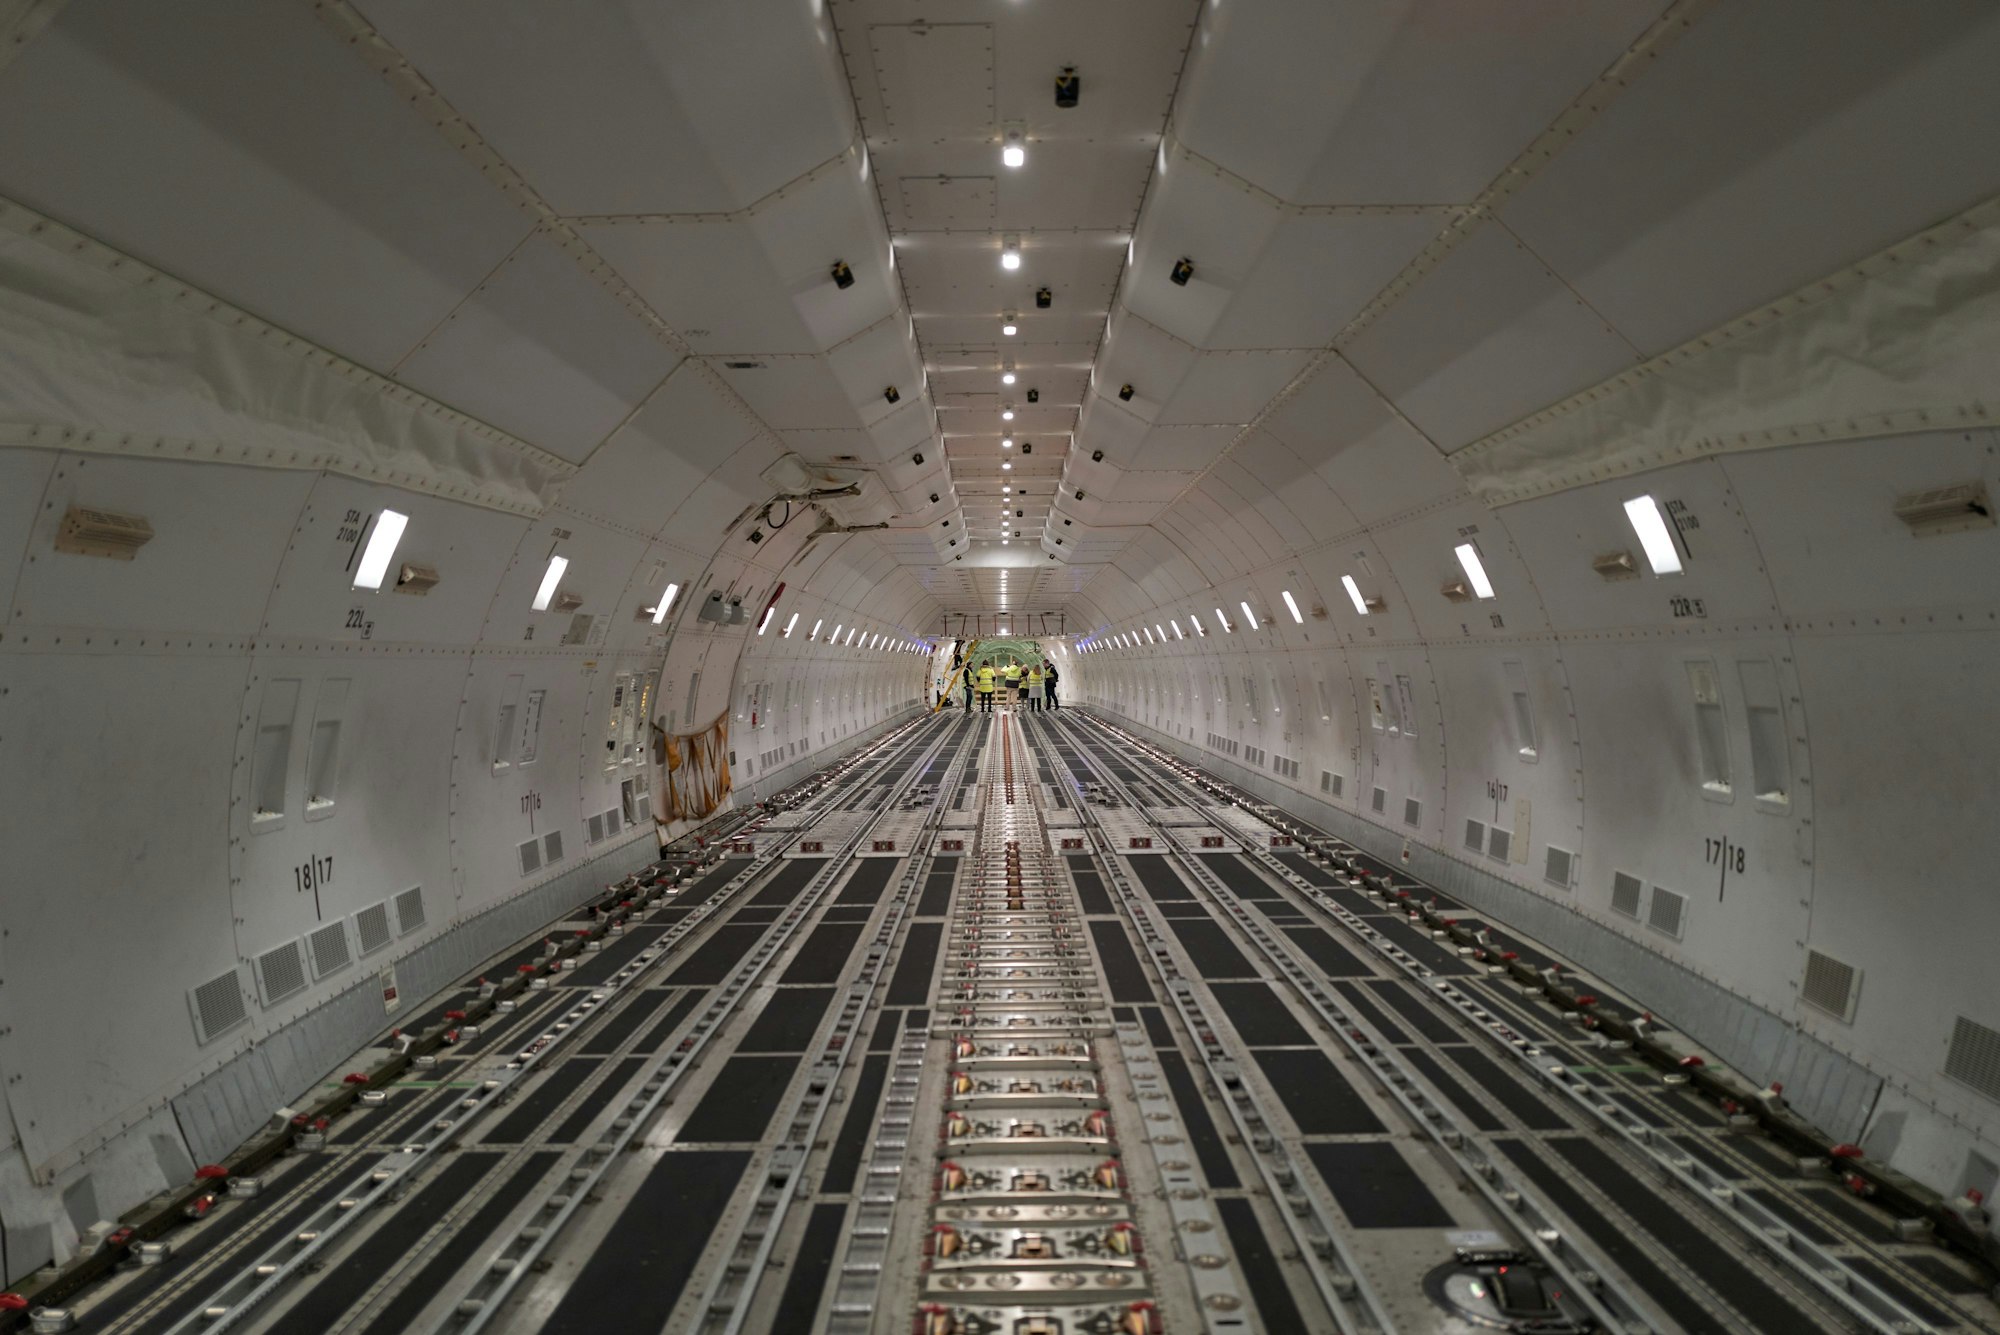 Der leere Laderaum einer Boeing-747 der UPS Airlines.